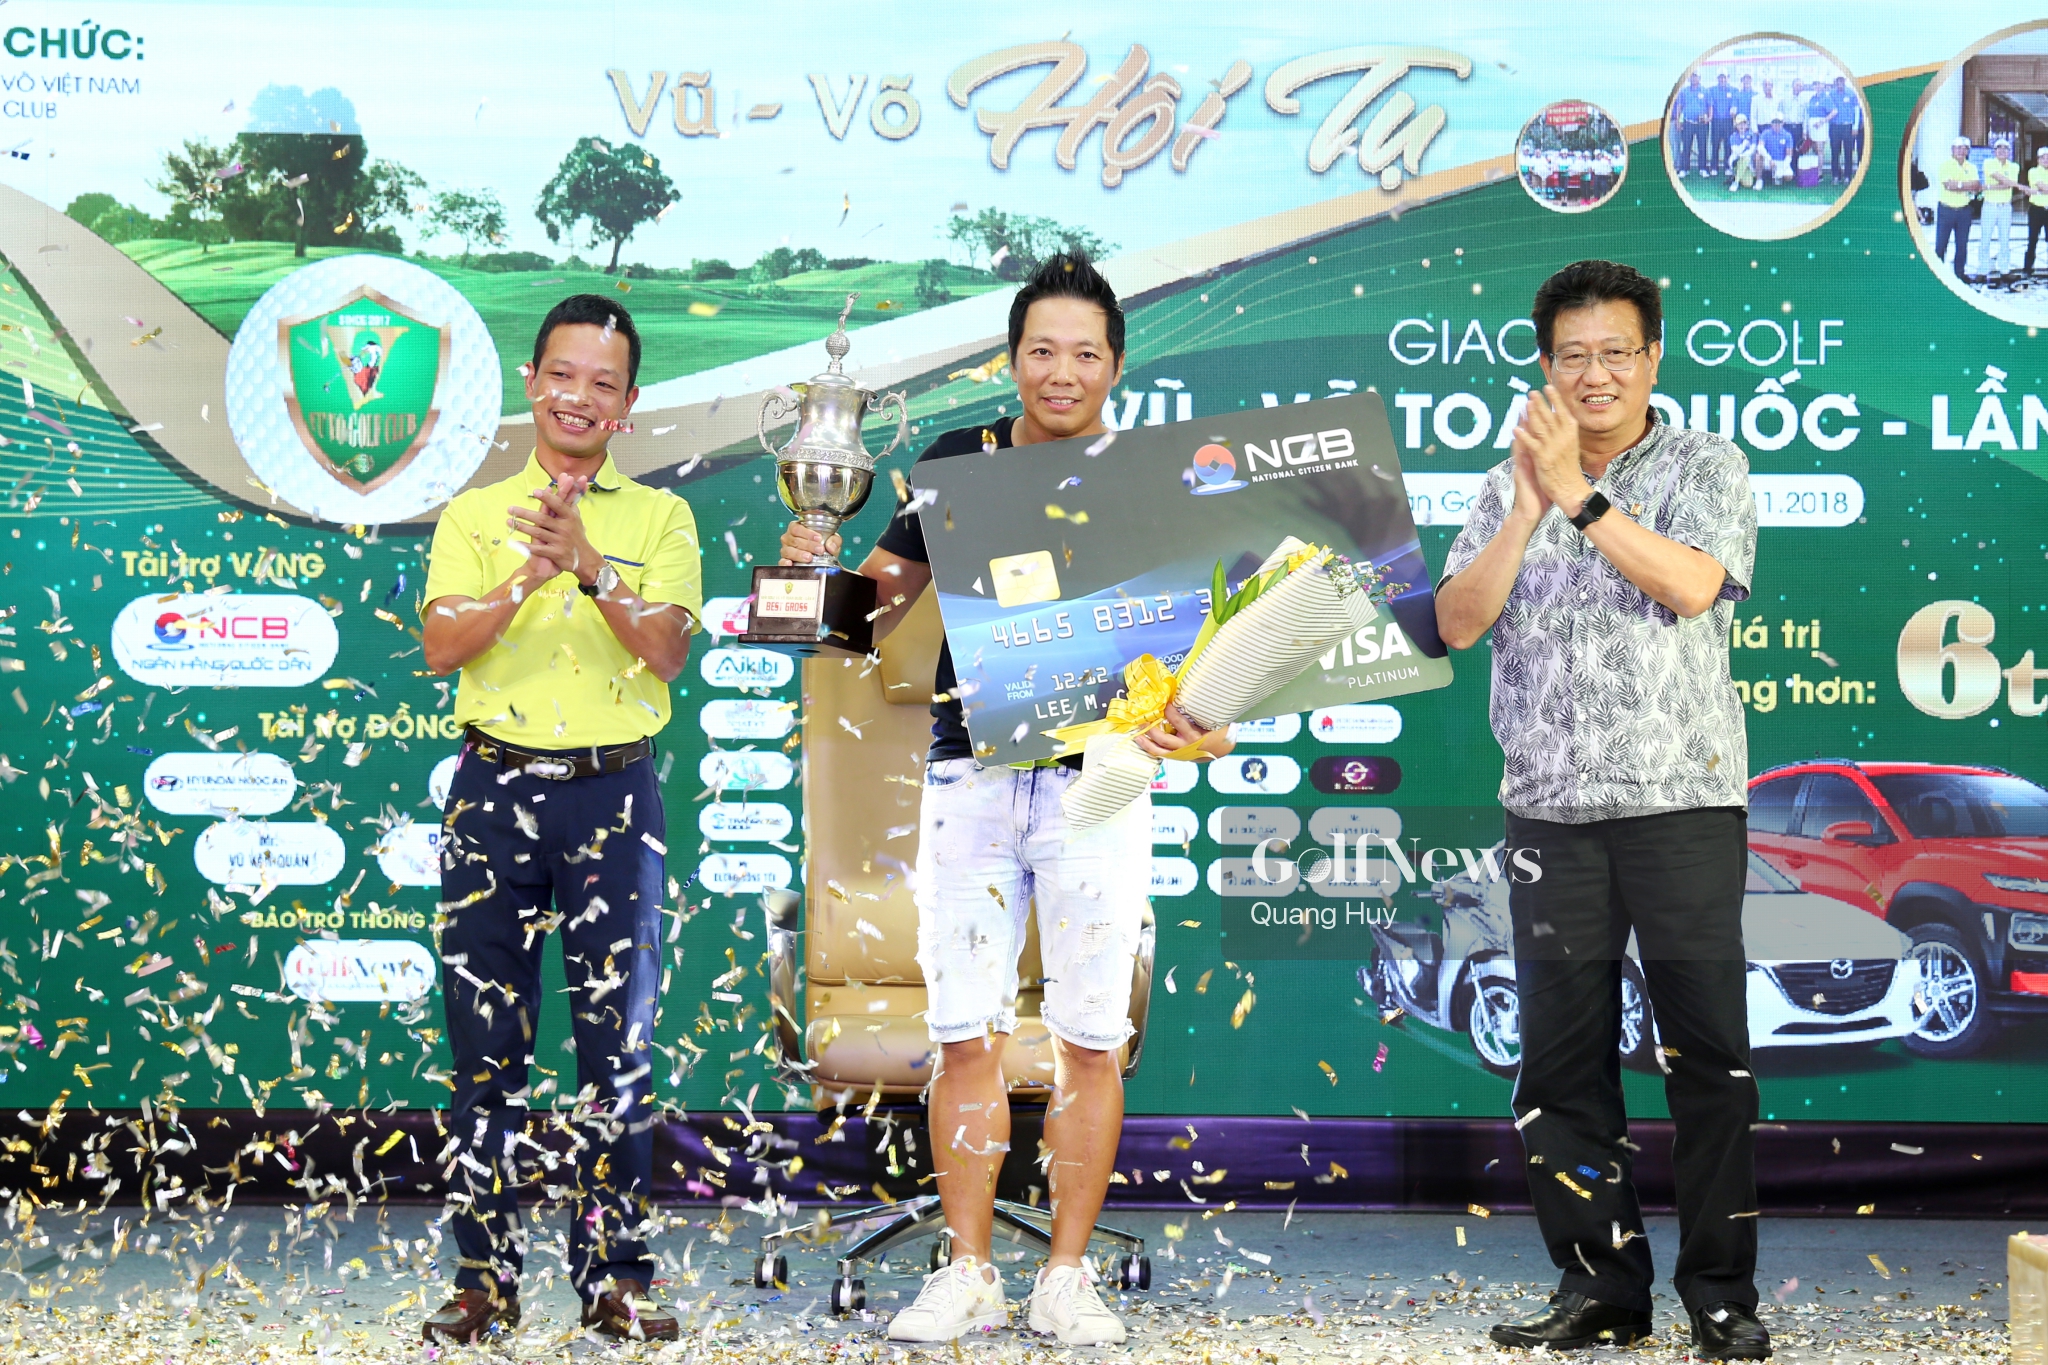 Golfer Võ Hoàng Minh giành Best Gross giải 'Vũ Võ hội tụ'